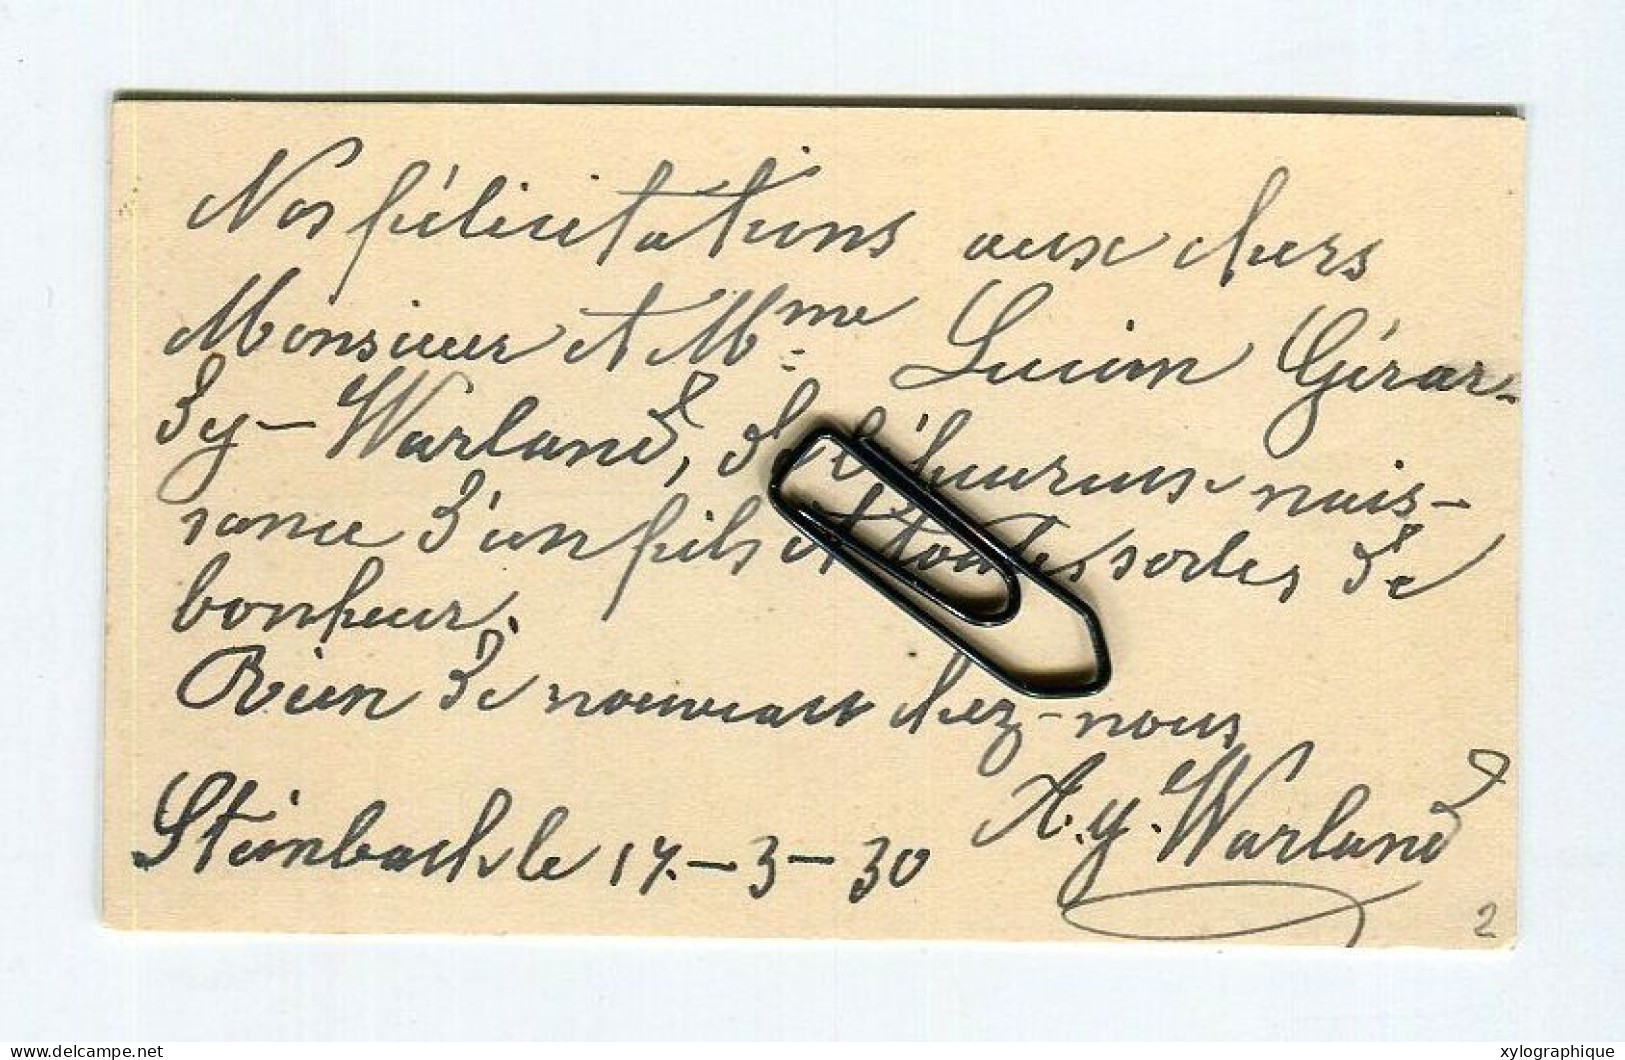 STEINBACH (Gouvy Limerlé) - Carte De Visite 1930, Voir Verso, Warland Meinguet, Pour Famille Gérardy Warland - Visiting Cards